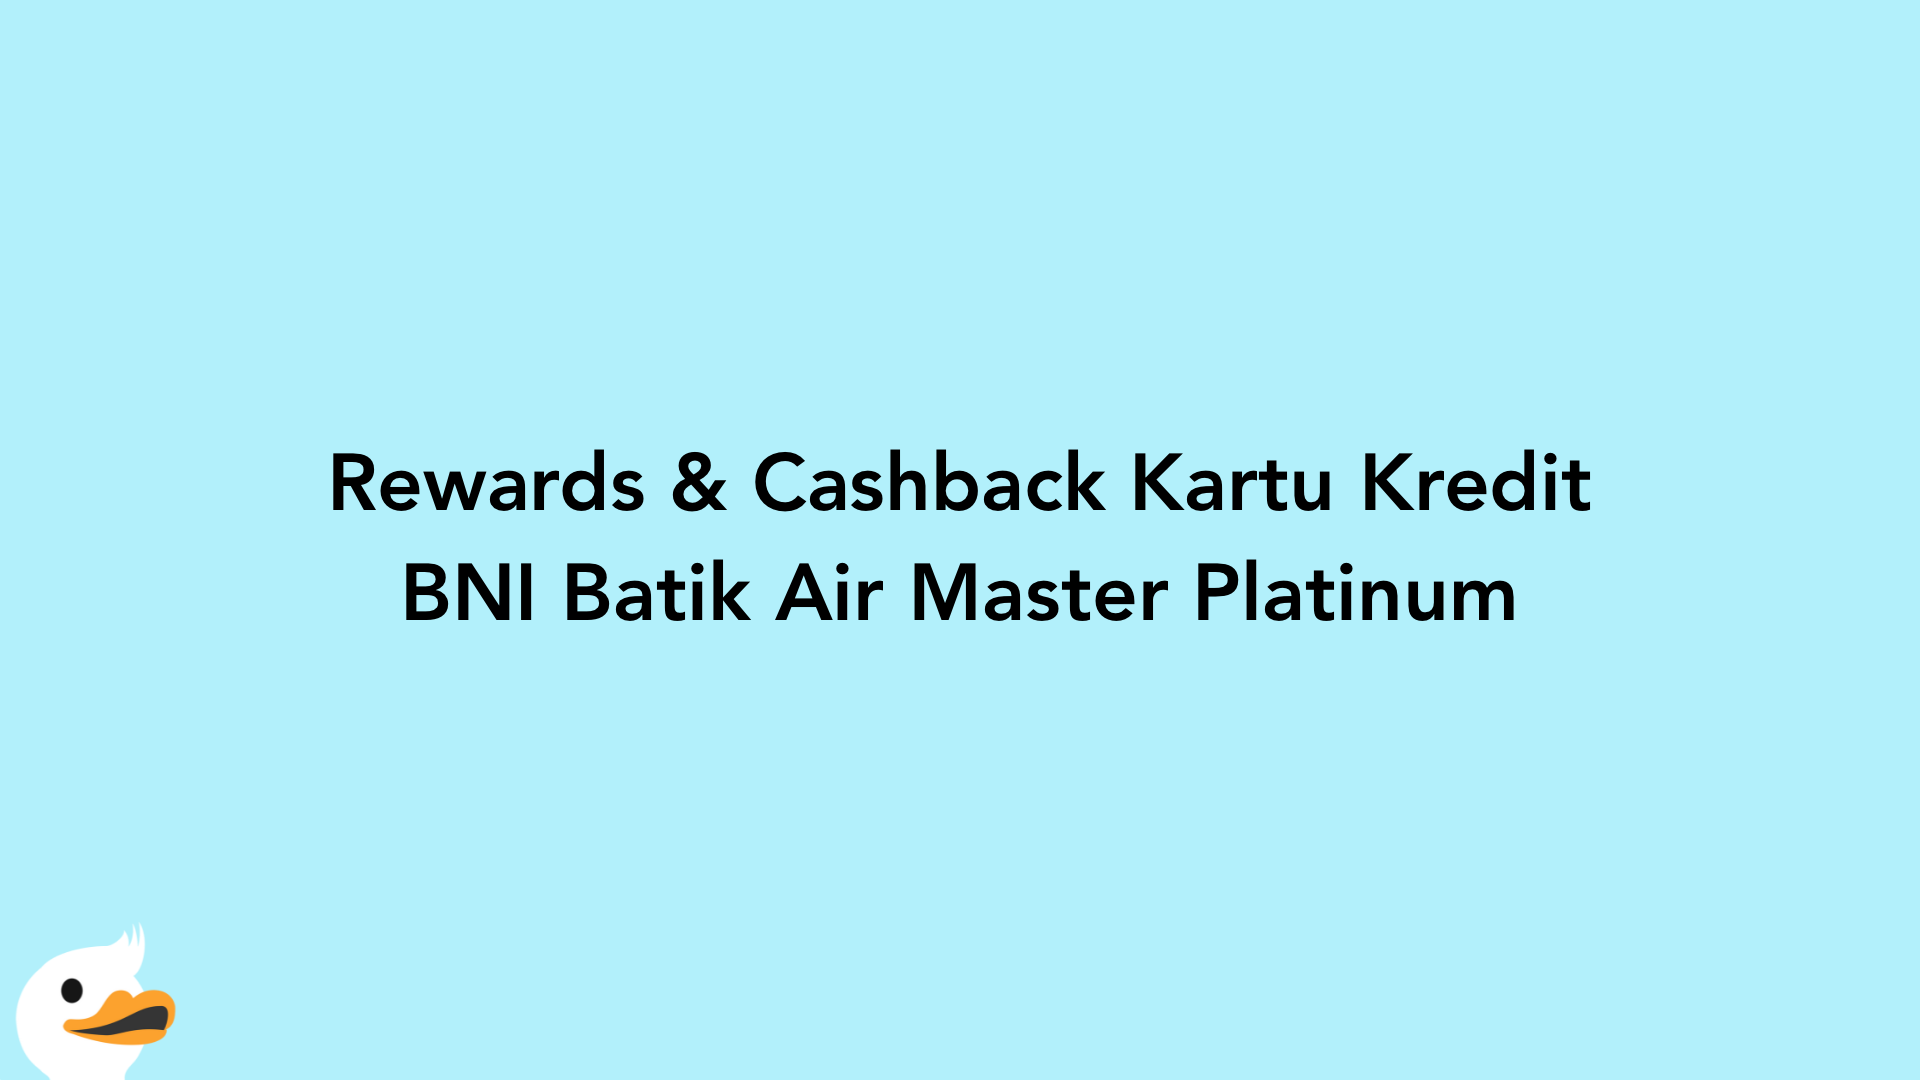 Rewards & Cashback Kartu Kredit BNI Batik Air Master Platinum